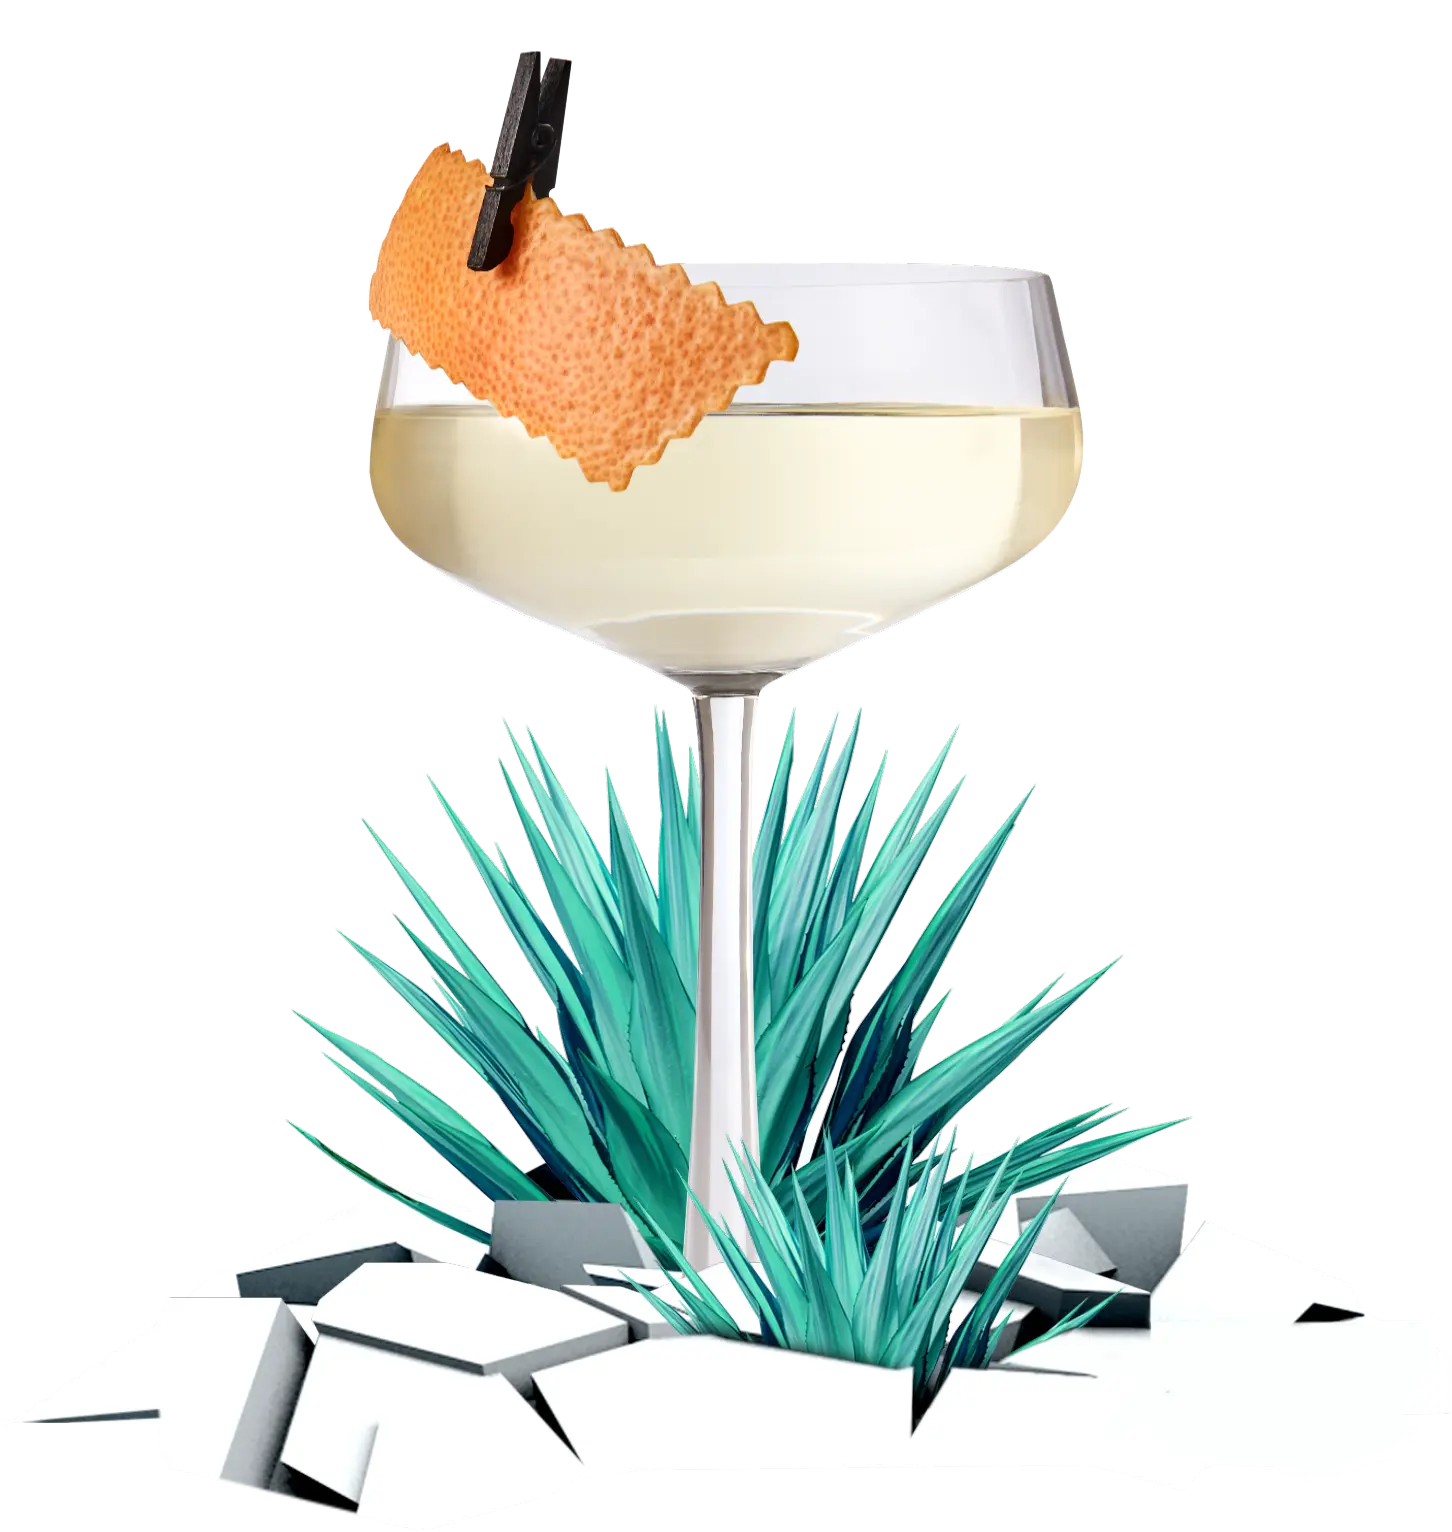 martini glass of margarita